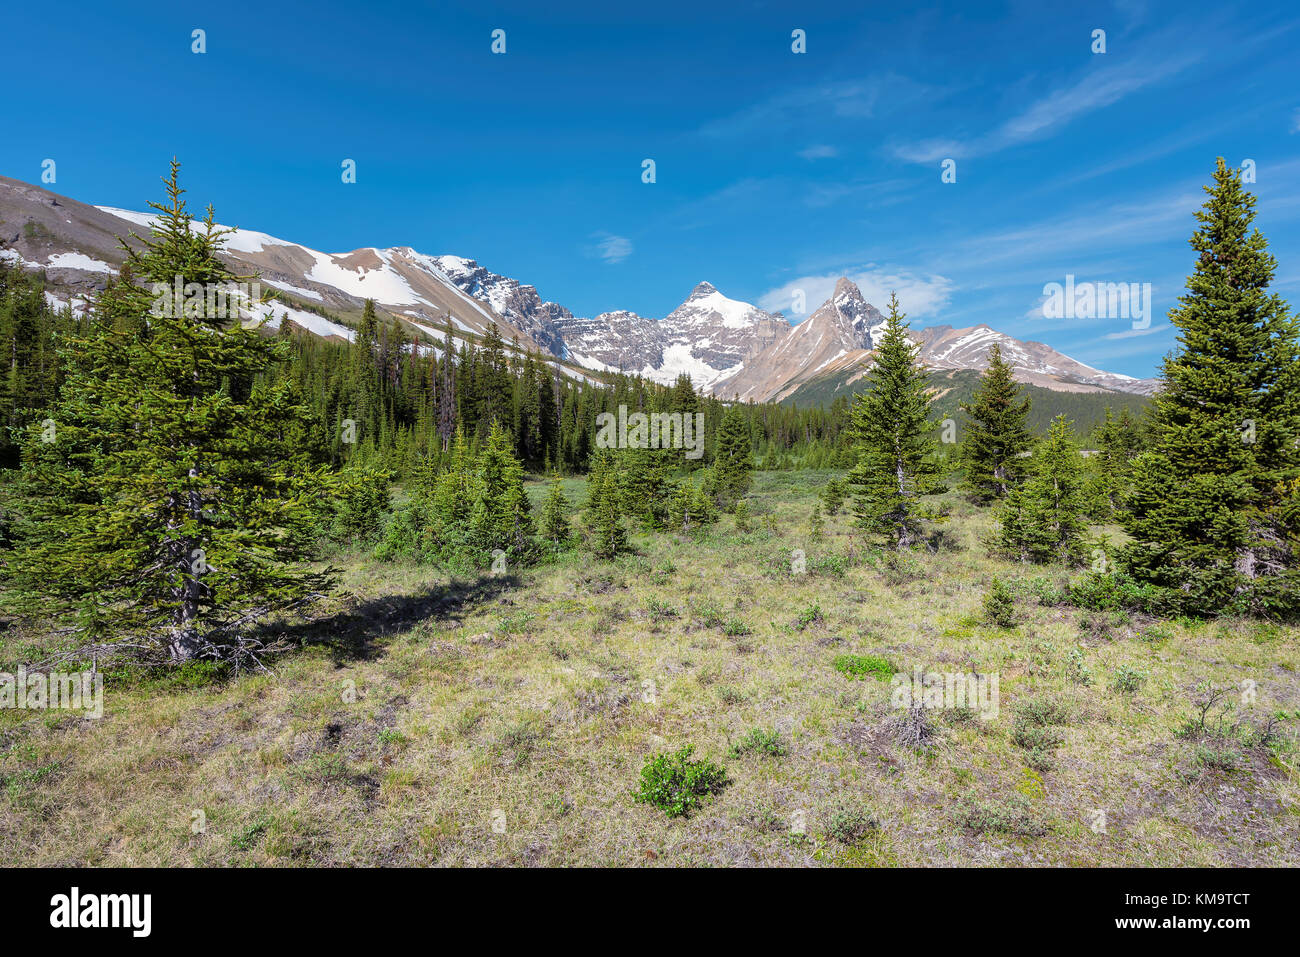 La natura alpina sul primo piano e Canadian Rockies sullo sfondo. Foto Stock